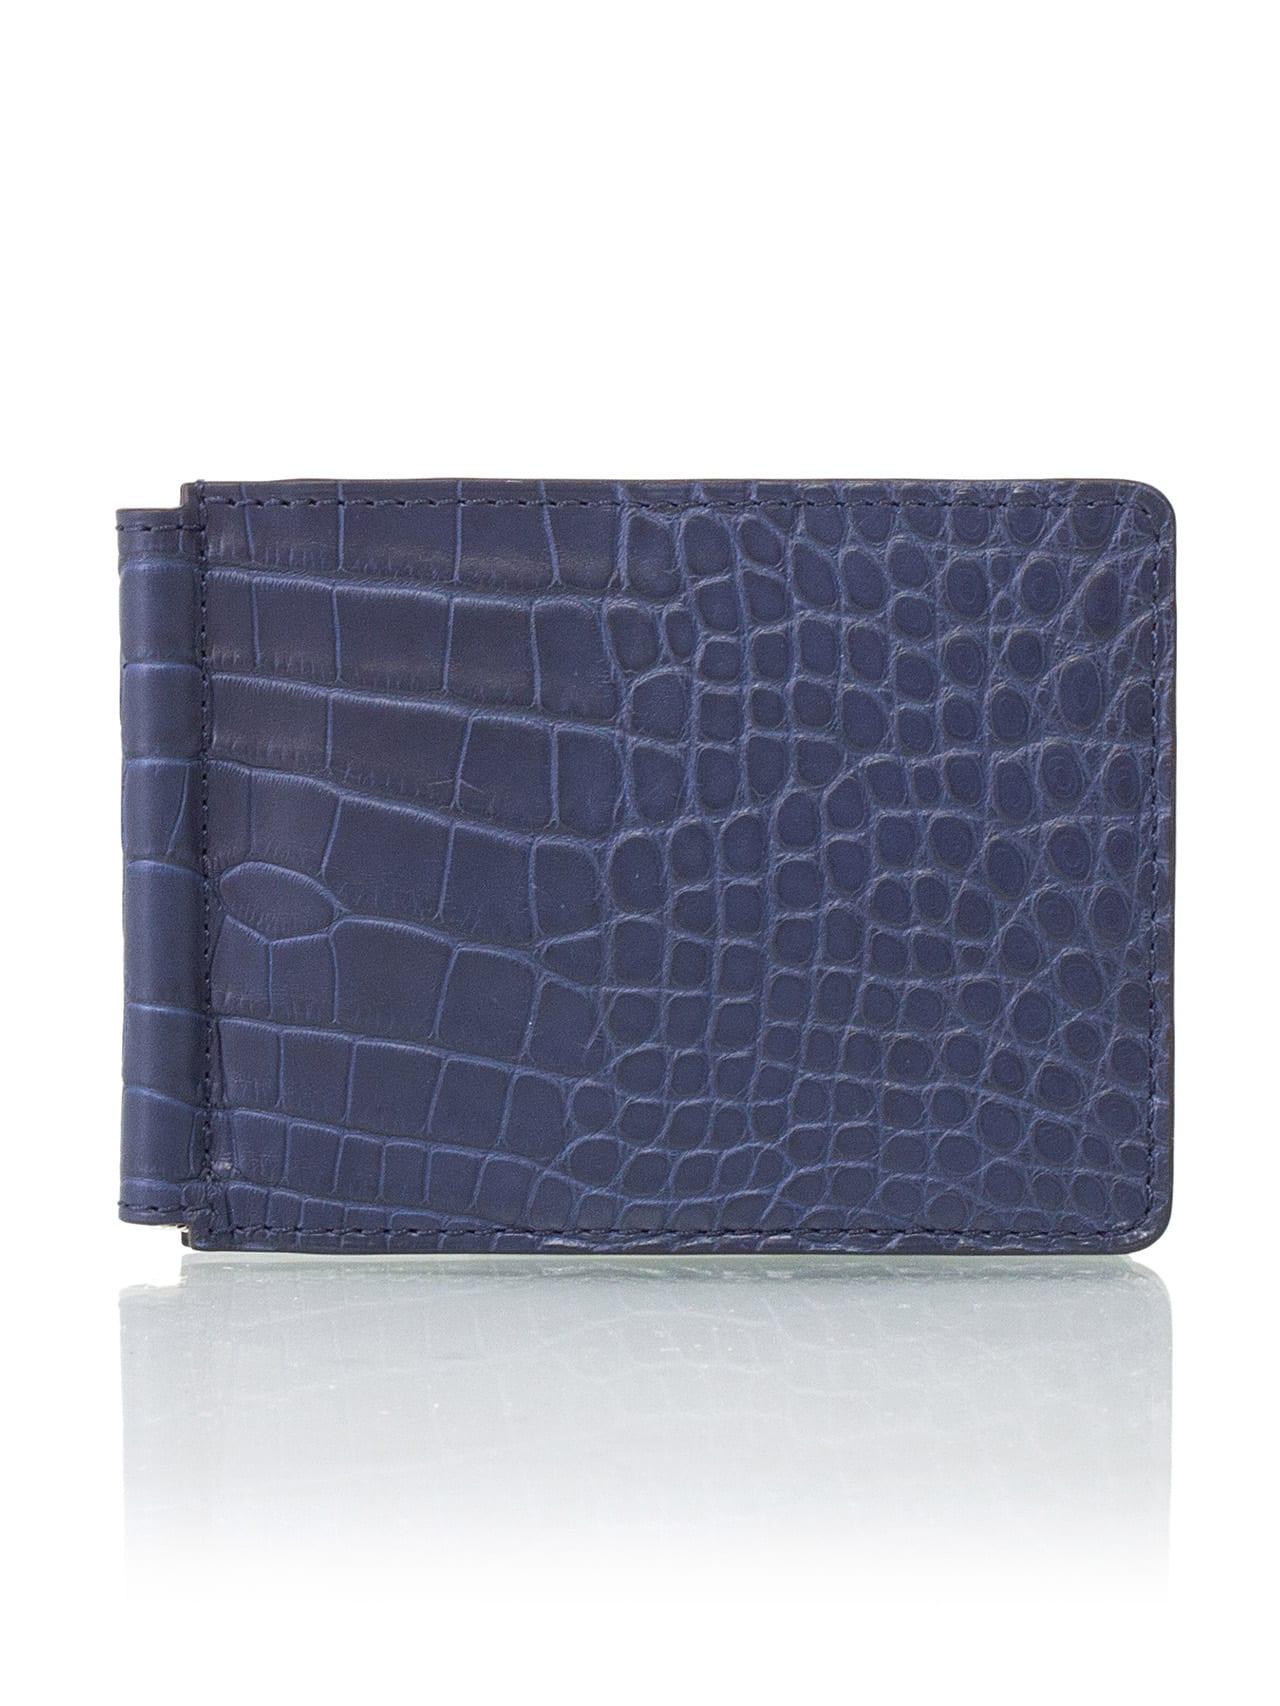 Money Clip Wallet dark blue semi matte alligator